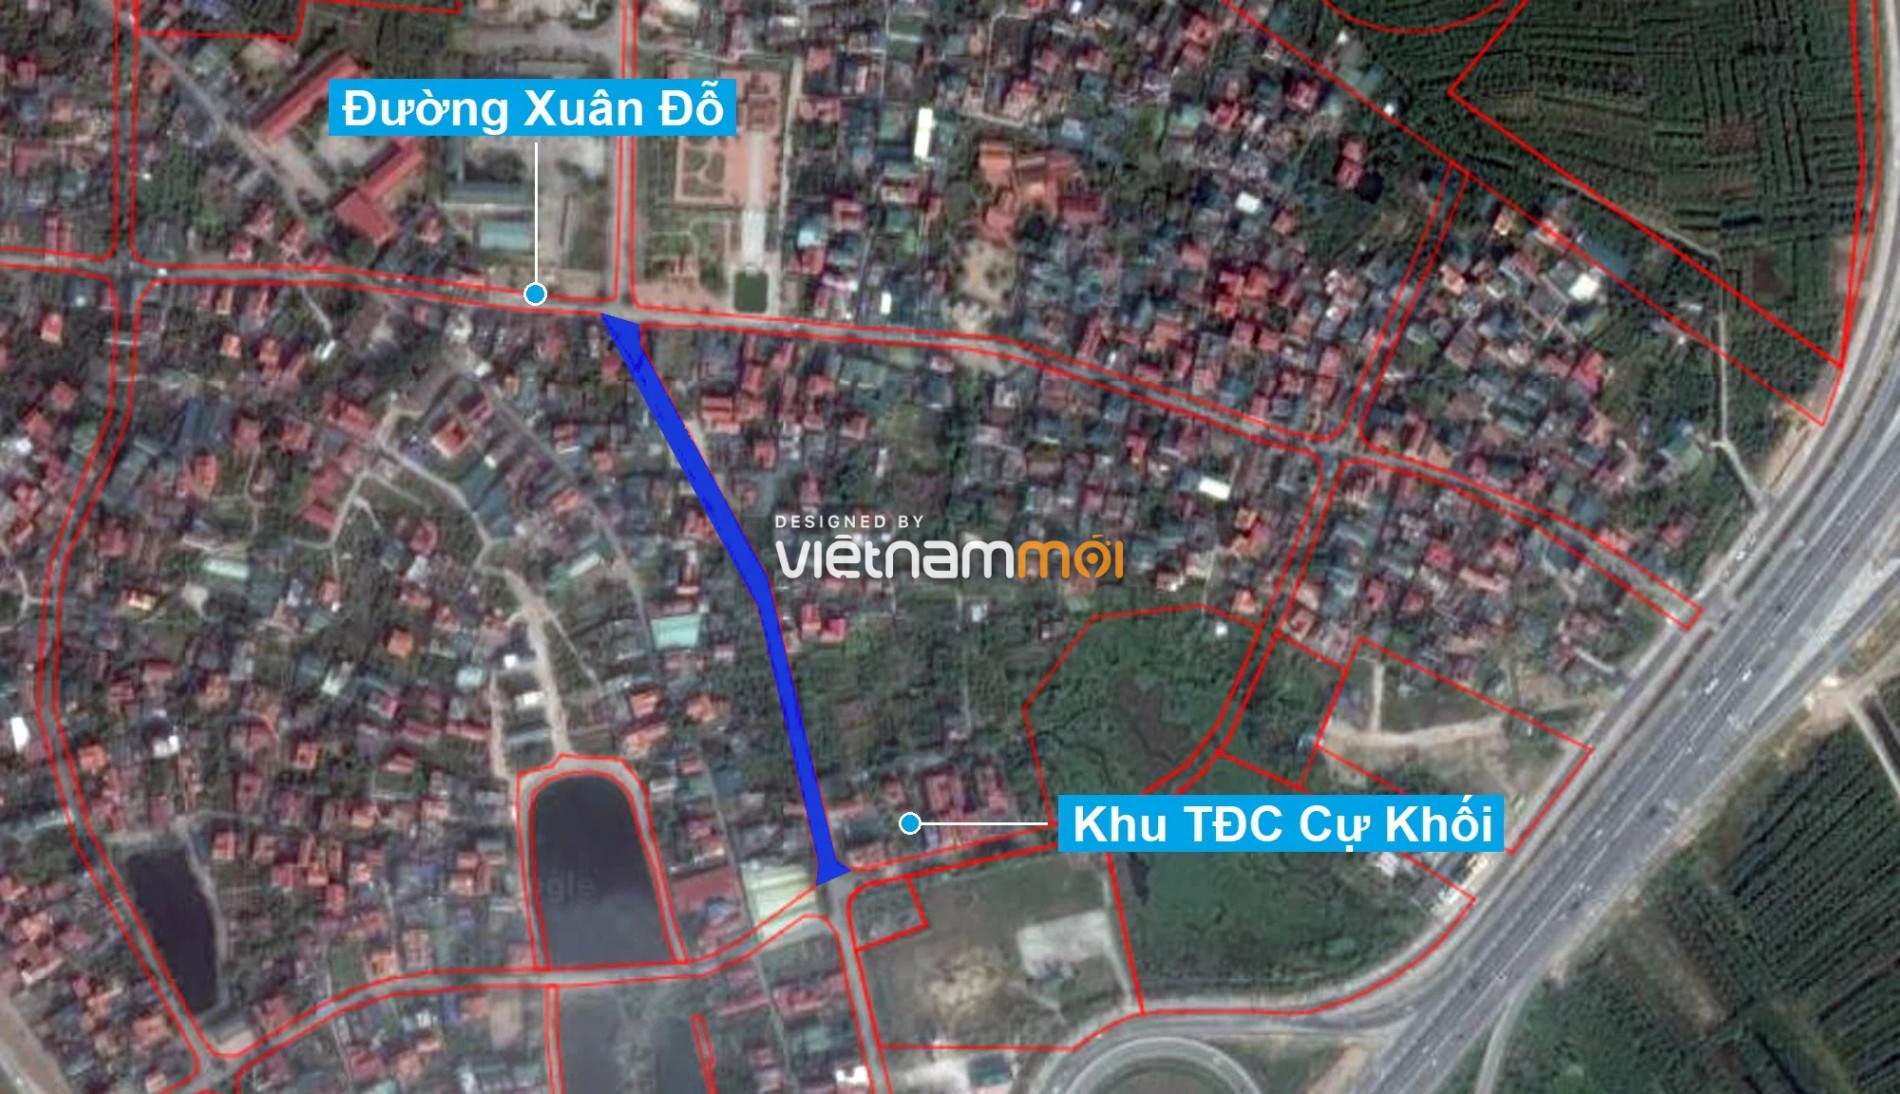 Những khu đất sắp thu hồi để mở đường ở phường Cự Khối, Long Biên, Hà Nội (phần 2) - Ảnh 2.